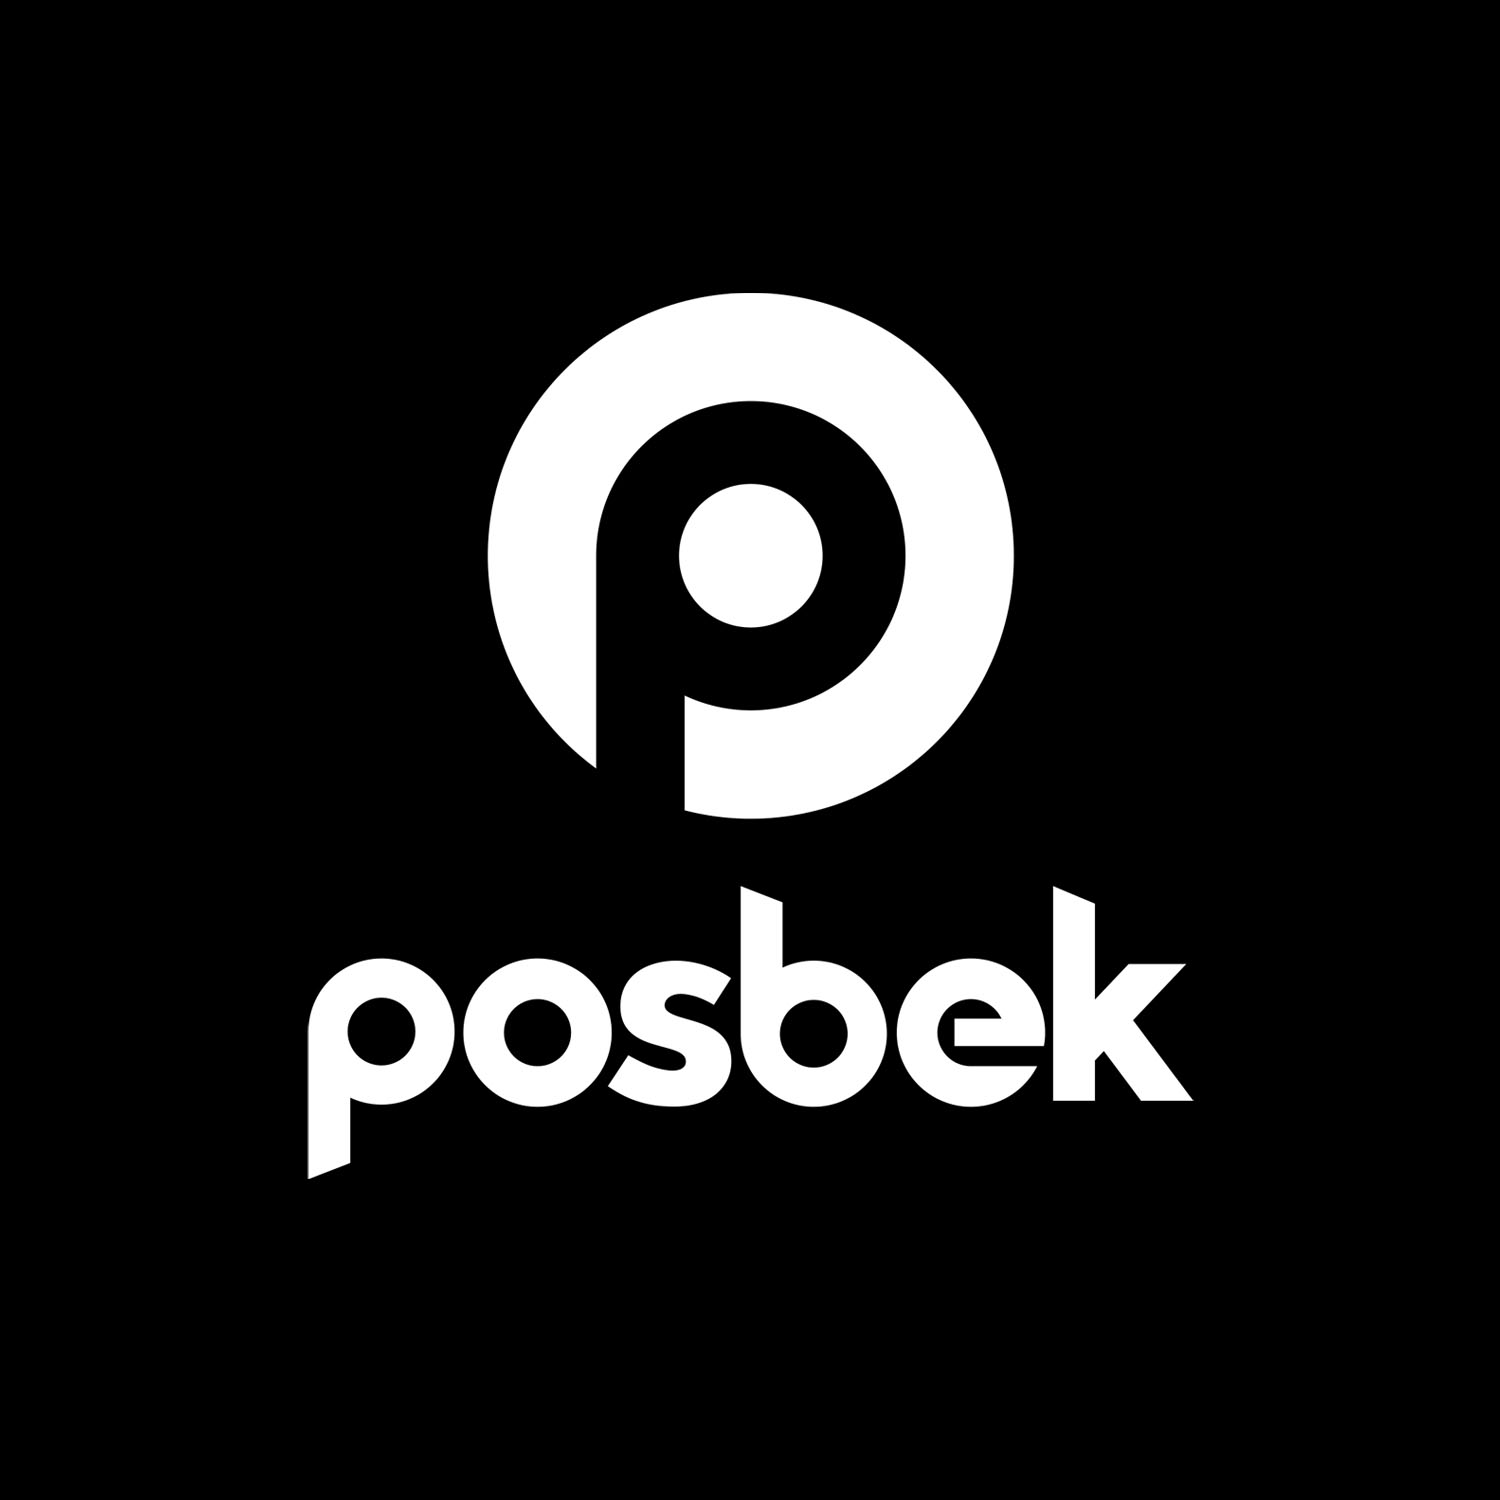 Logo, Posbek, made by Therwiz Design